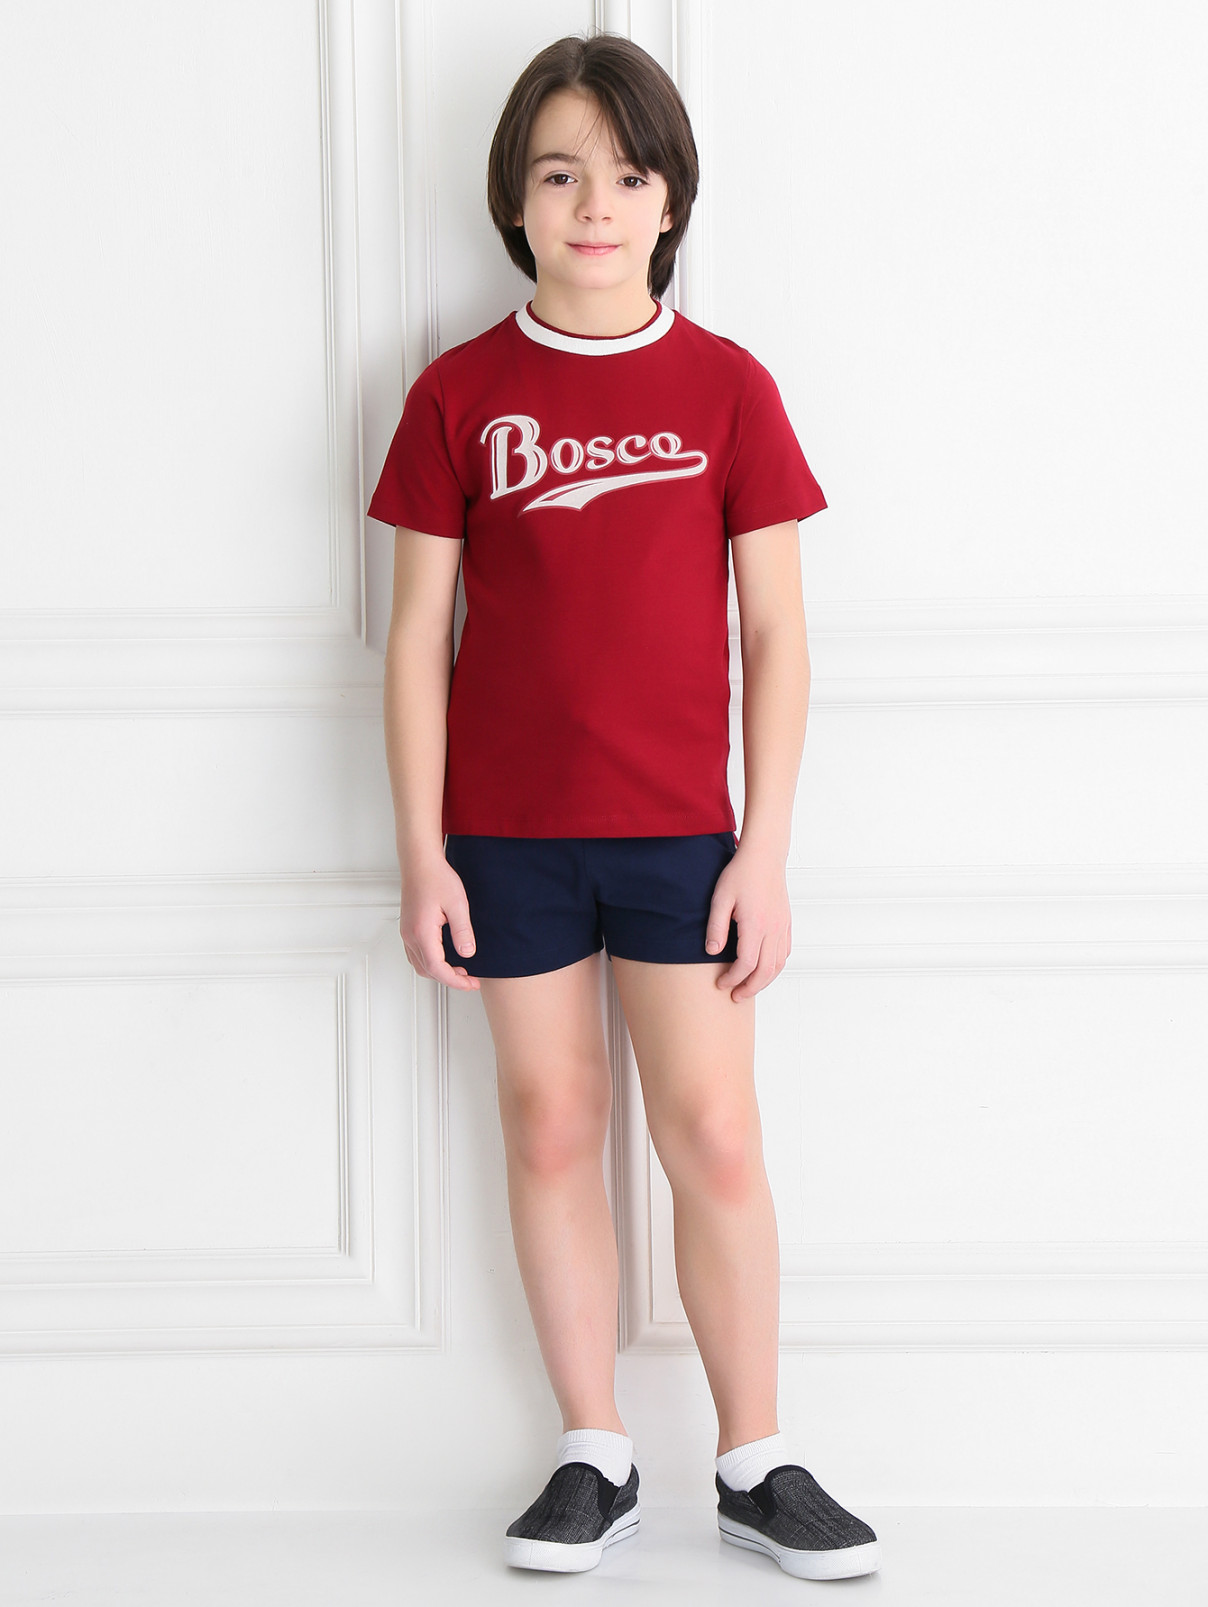 Футболка из хлопка с принтом Bosco Fresh  –  Модель Общий вид  – Цвет:  Красный